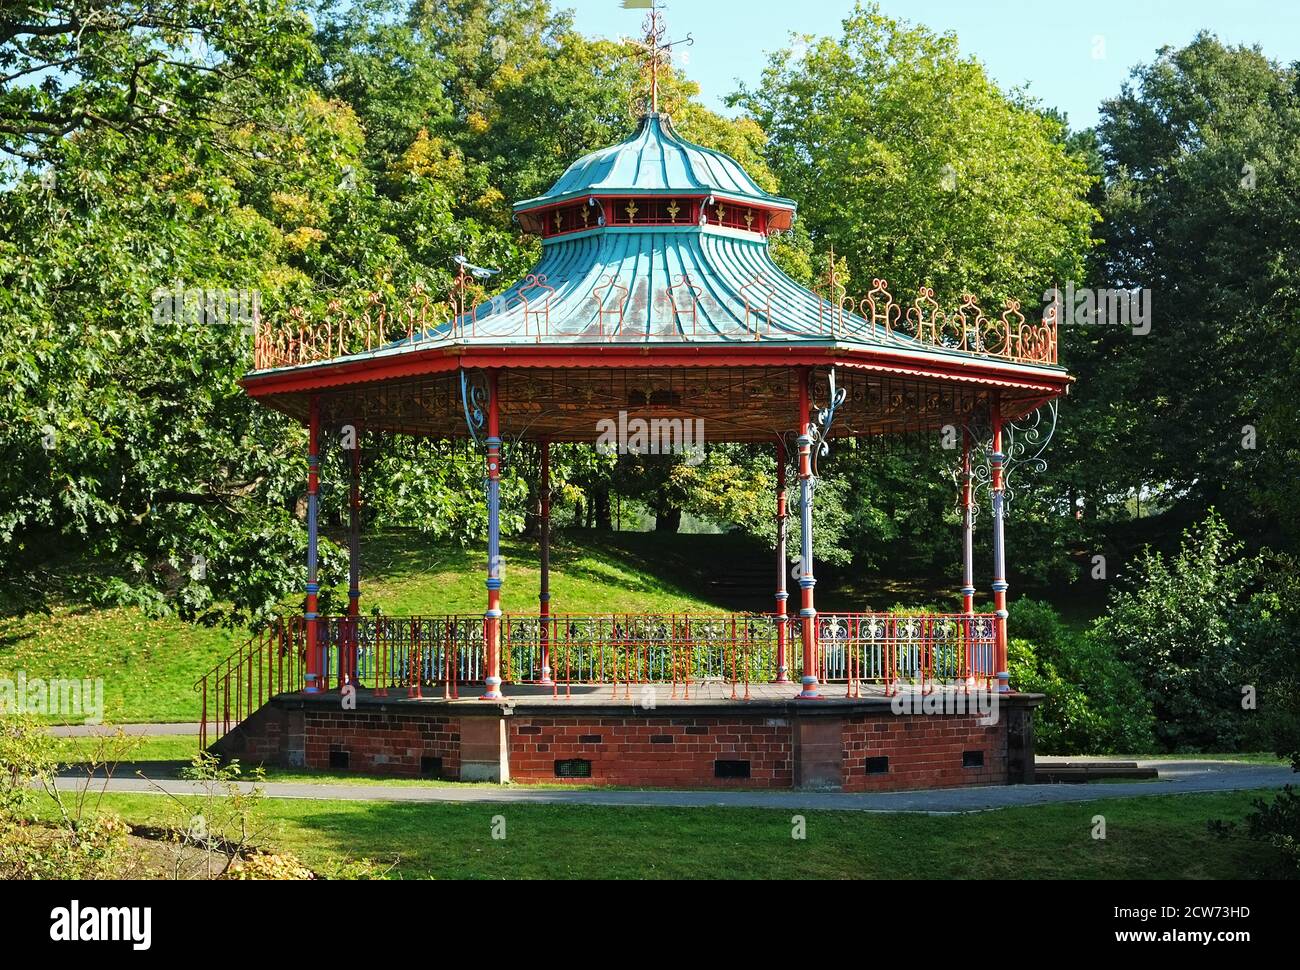 Der viktorianische Bandstand im sefton Park, liverpool, england, der angeblich die Inspiration für den Beatles-Song Sgt Peppers Lonely Hearts Club B sein soll Stockfoto